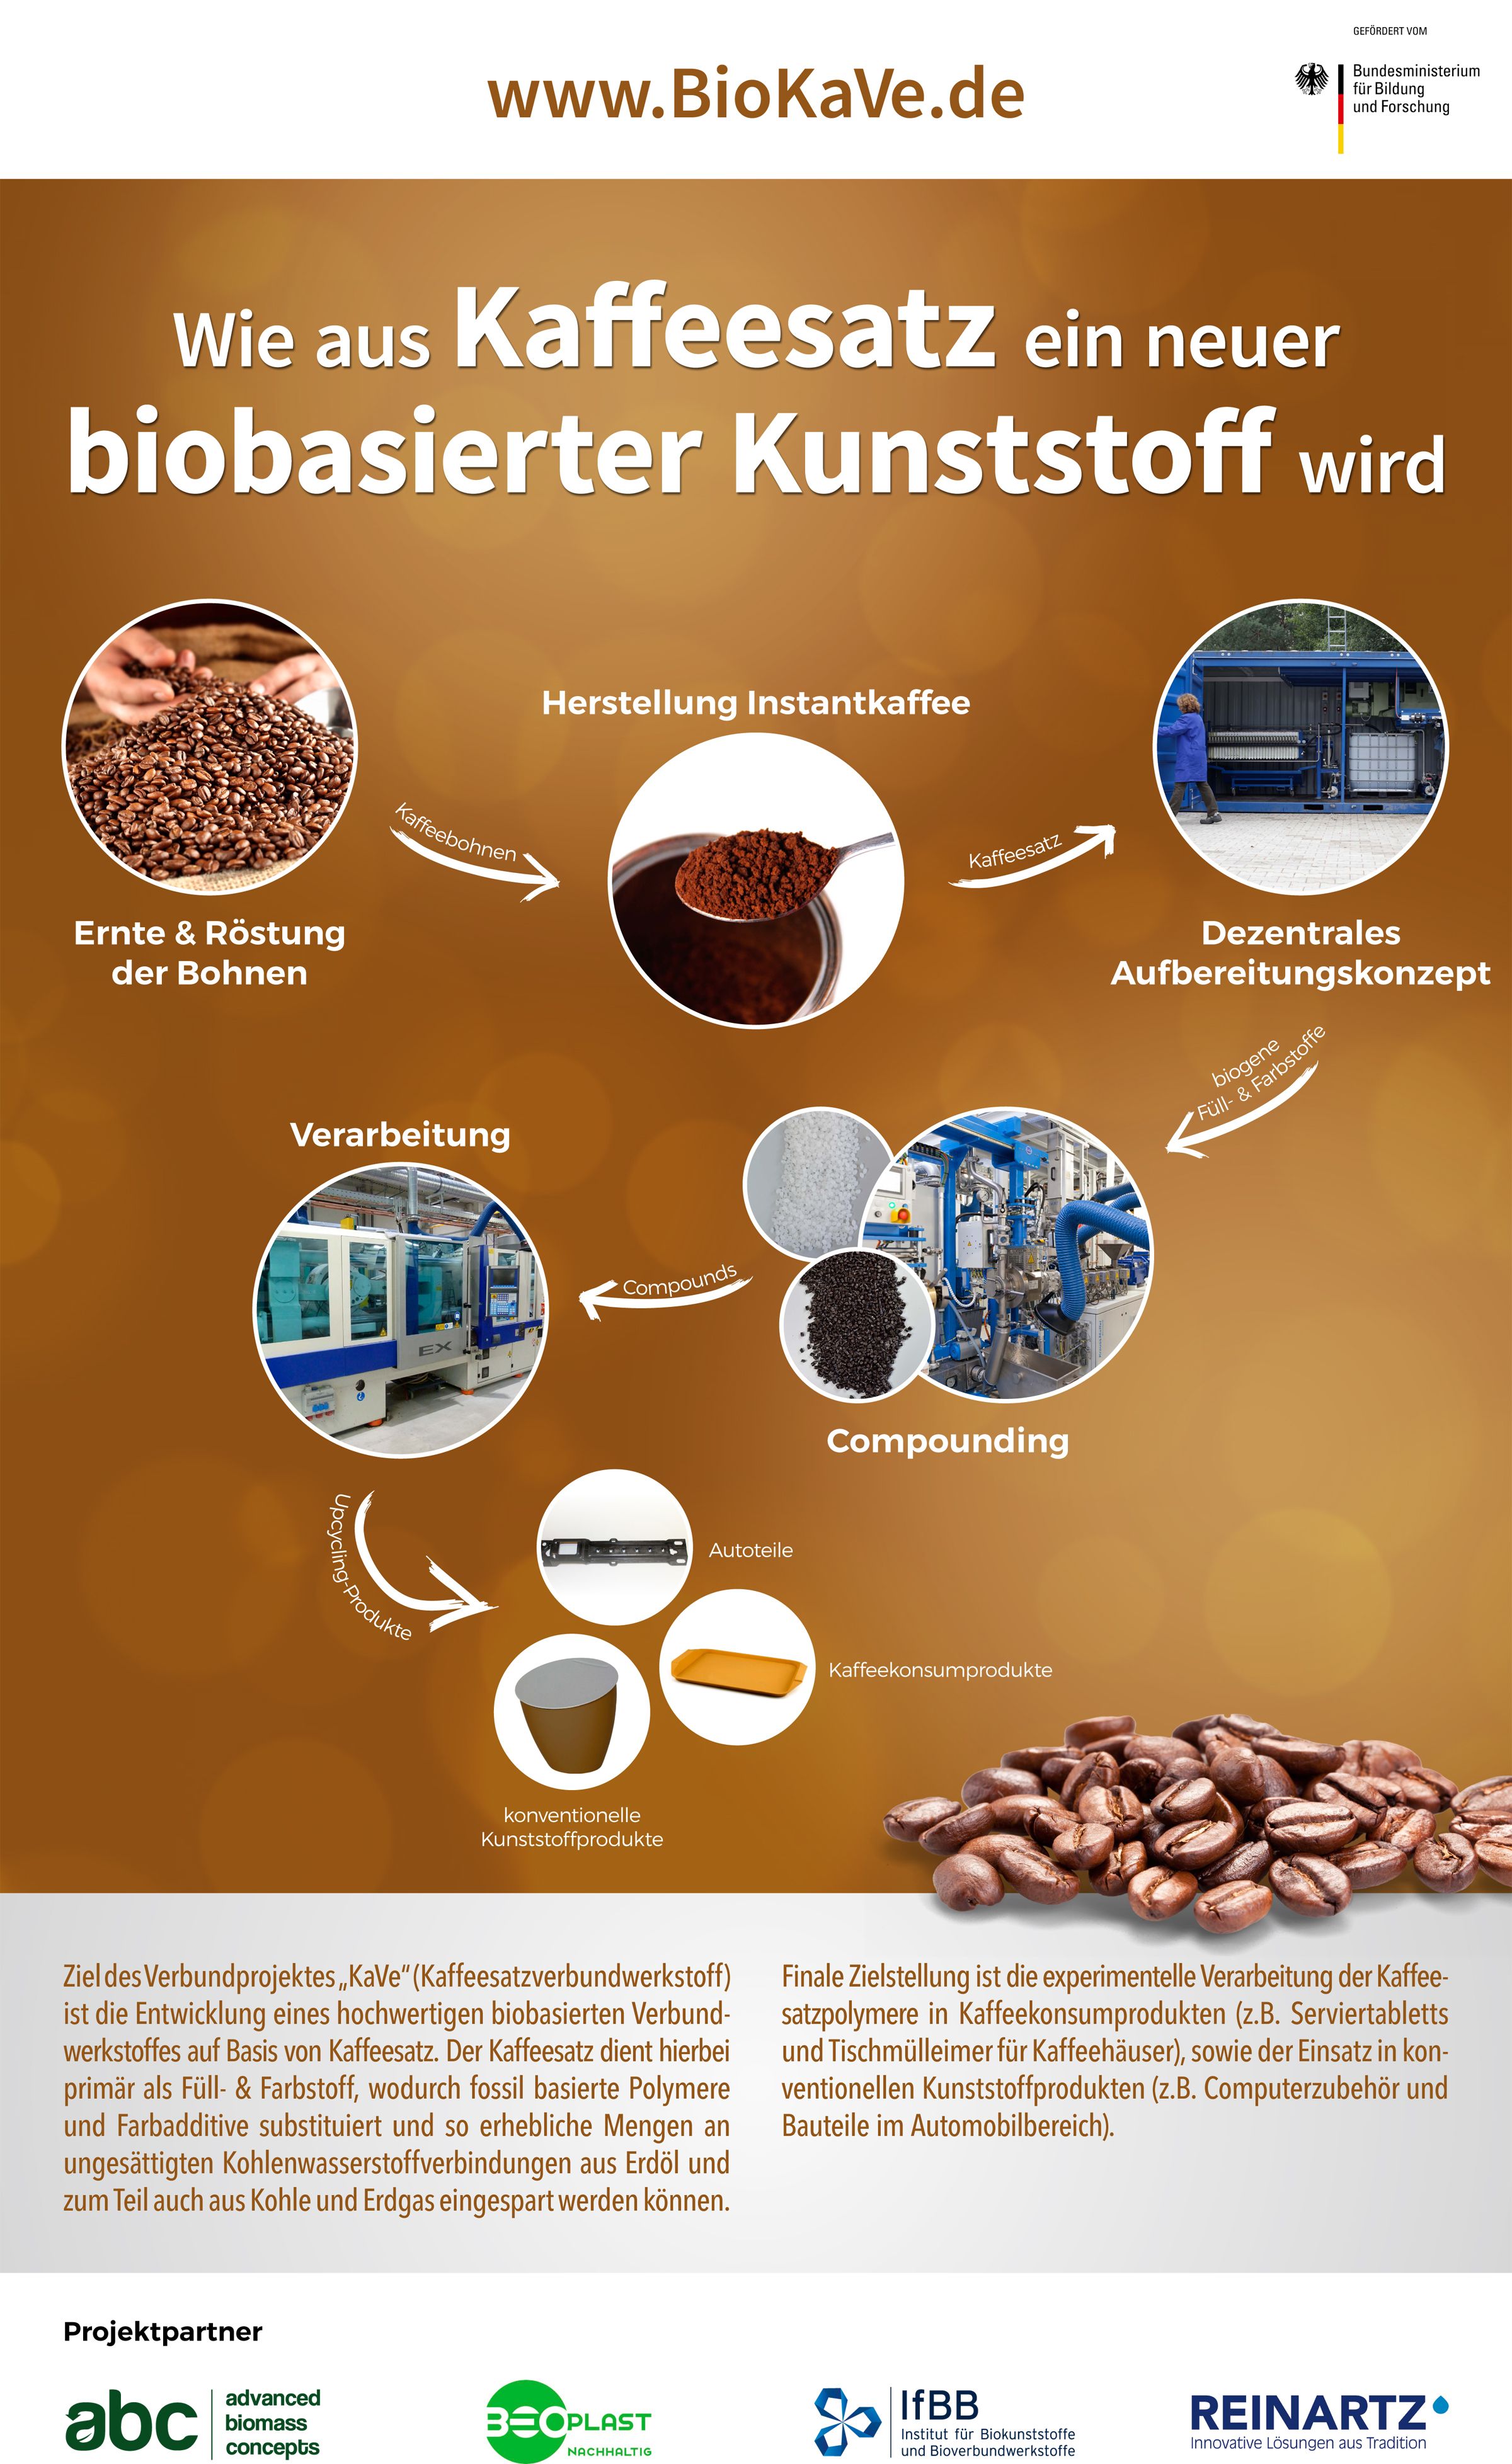 Ziel des Verbundprojektes „KaVe“ (Kaffeesatzverbundwerkstoff)
ist die Entwicklung eines hochwertigen biobasierten Verbundwerkstoffes
auf Basis von Kaffeesatz. Der Kaffeesatz dient hierbei
primär als Füll- & Farbstoff, wodurch fossil basierte Polymere
und Farbadditive substituiert und so erhebliche Mengen an
ungesättigten Kohlenwasserstoffverbindungen aus Erdöl und
zum Teil auch aus Kohle und Erdgas eingespart werden können.
Finale Zielstellung
ist die experimentelle Verarbeitung der Kaffeesatzpolymere
in Kaffeekonsumprodukten (z.B. Serviertabletts
und Tischmülleimer für Kaffeehäuser), sowie der Einsatz in konventionellen
Kunststoffprodukten (z.B. Computerzubehör und
Bauteile im Automobilbereich).